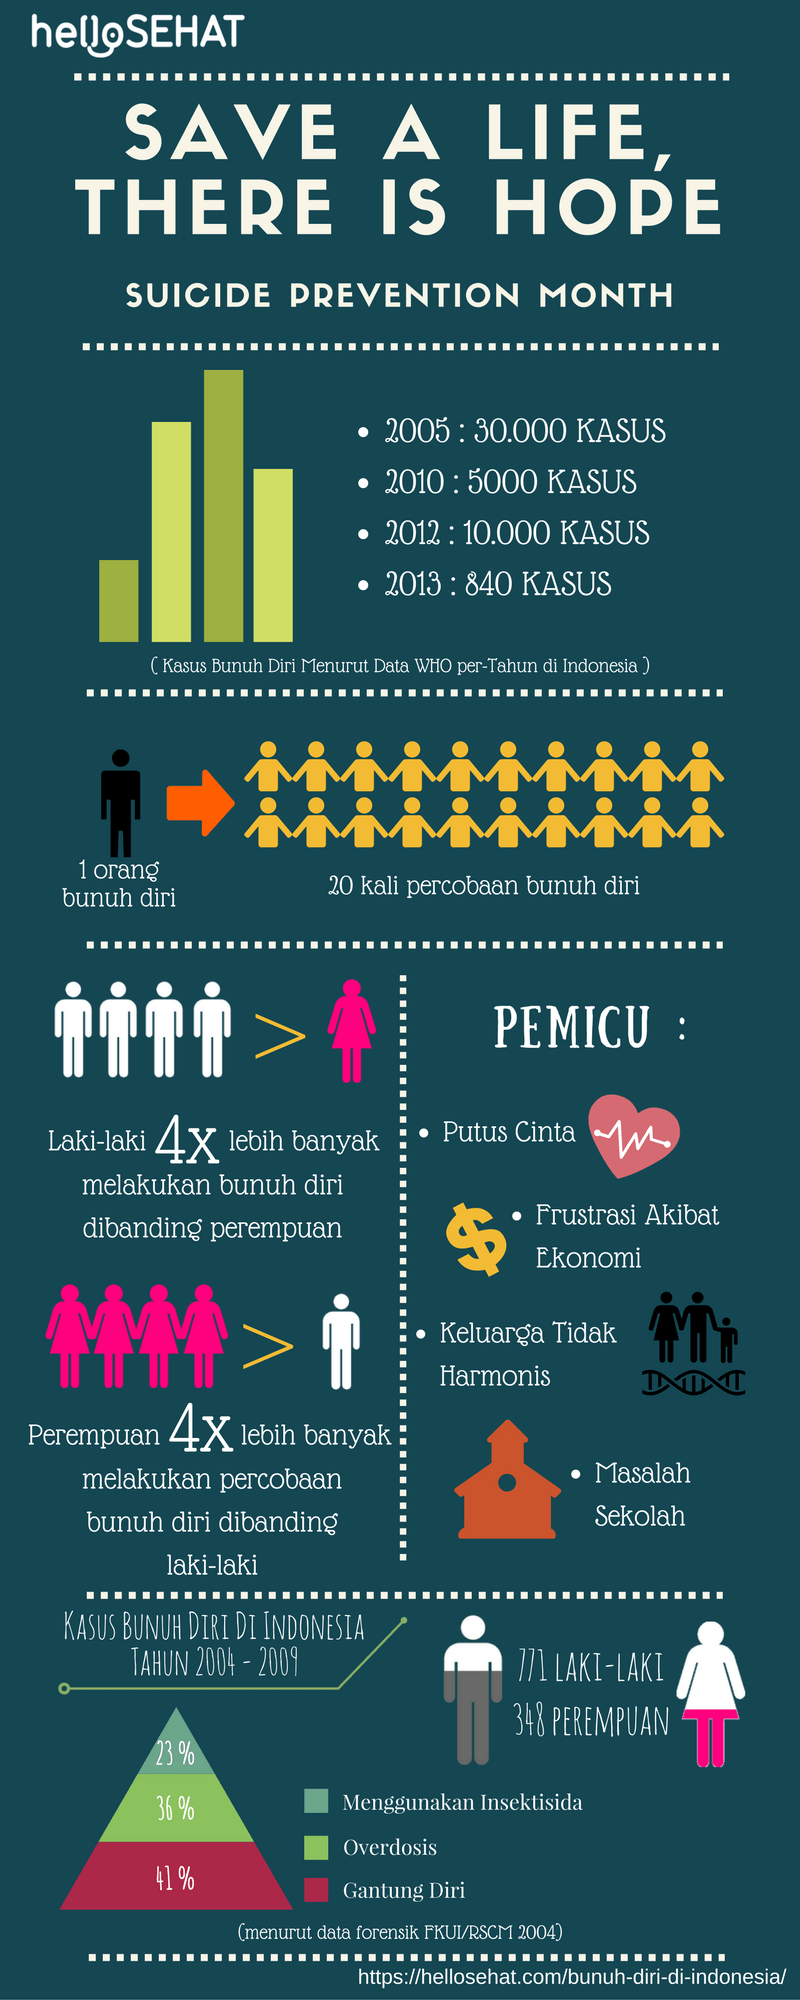 αυτοκτονικό infographic στην Ινδονησία - hellosehat